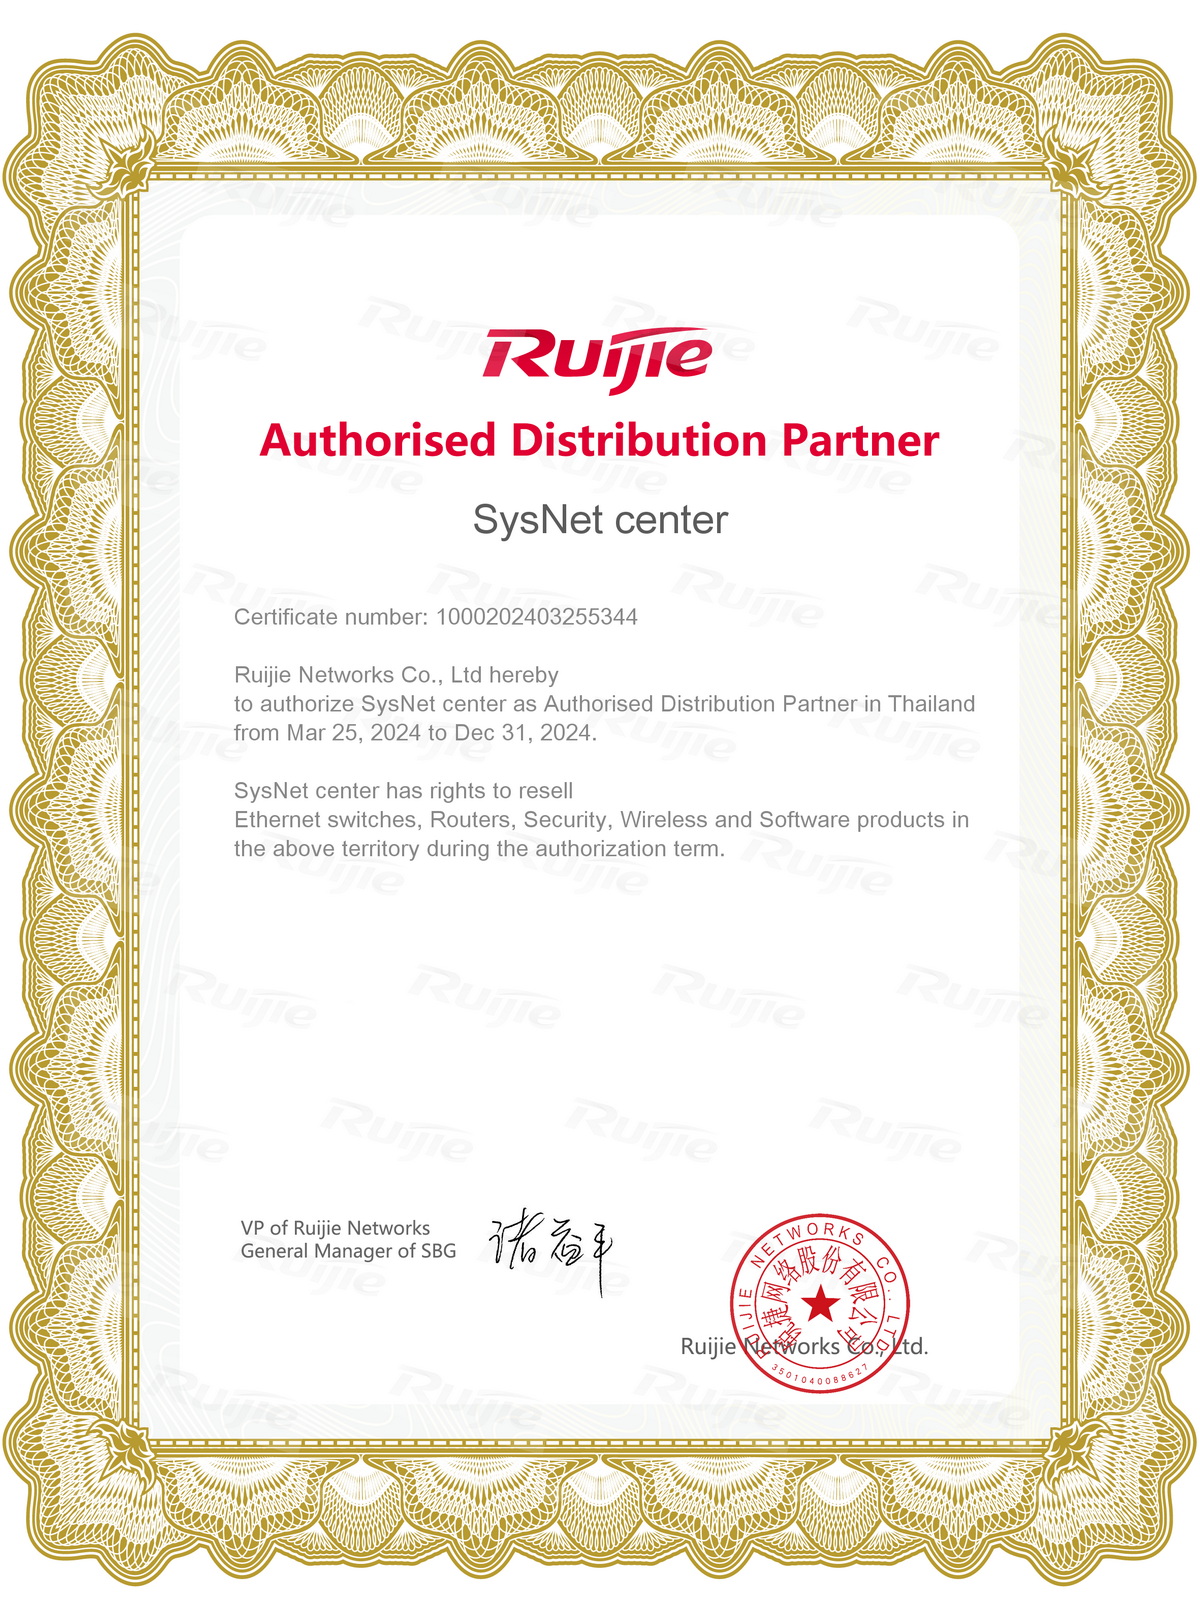 ตัวแทนจำหน่าย Ruijie Reyee Sub-d certificate